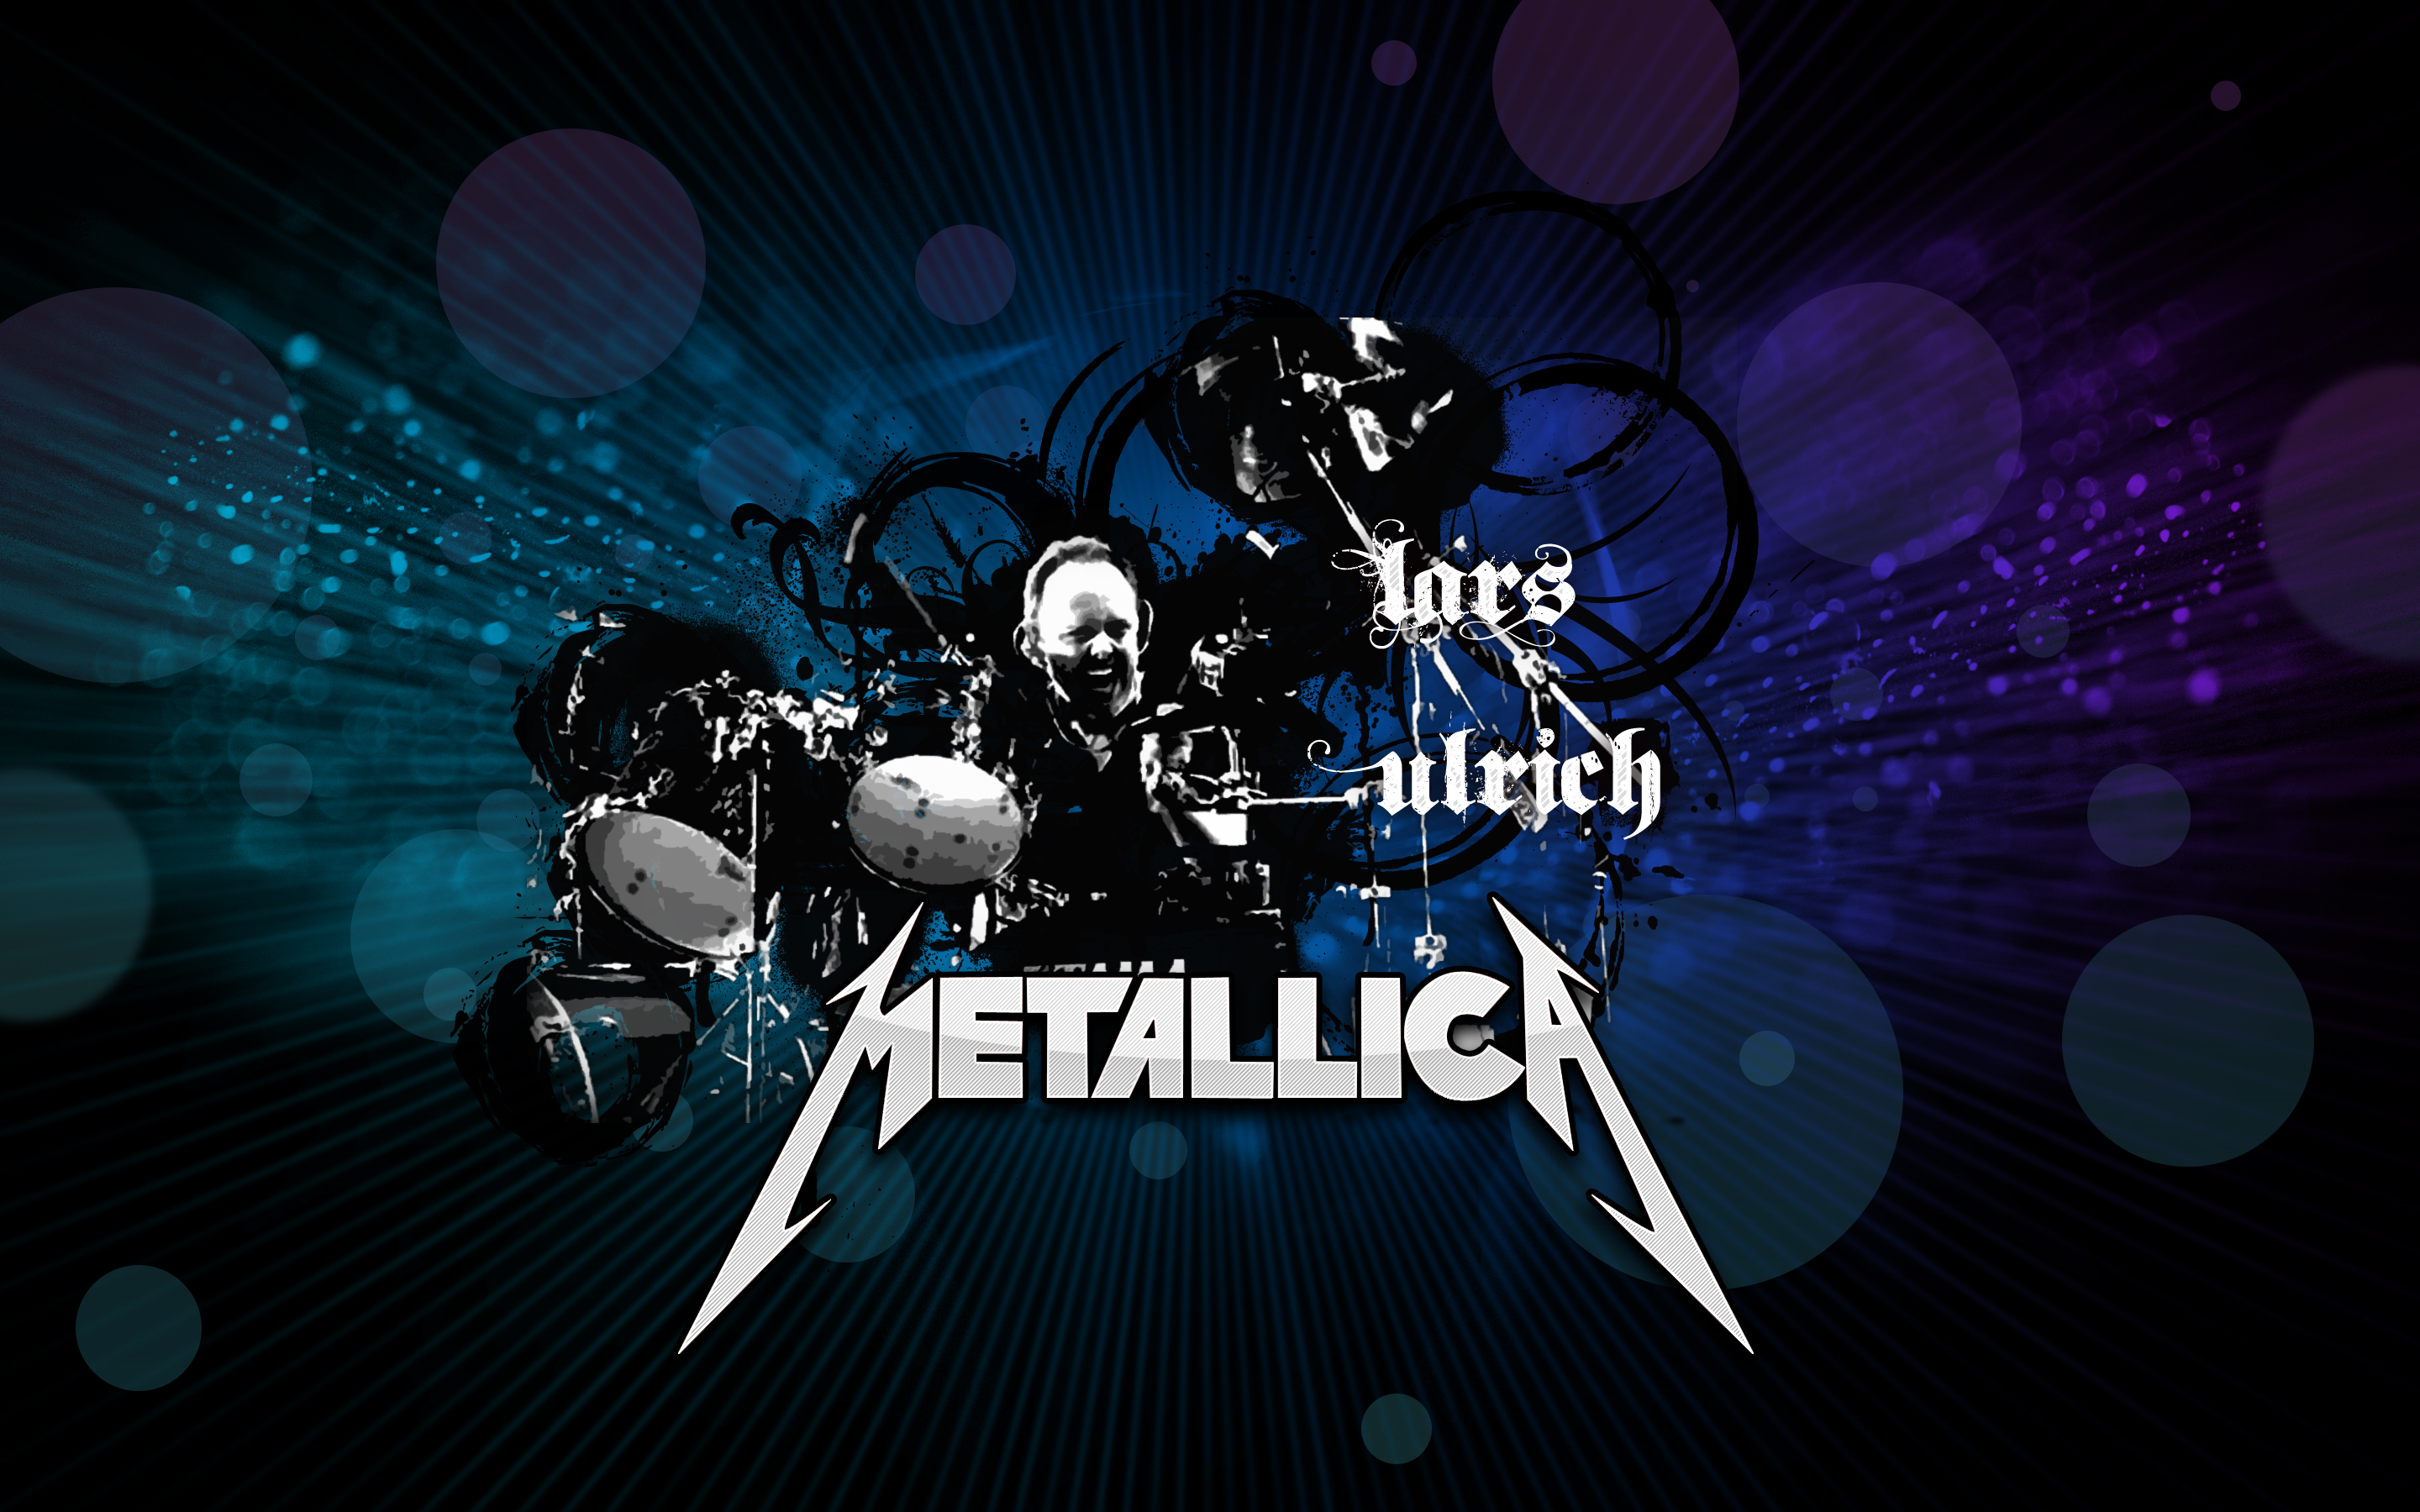 Metallica Fondo De Pantalla Hd Fondo De Escritorio 28